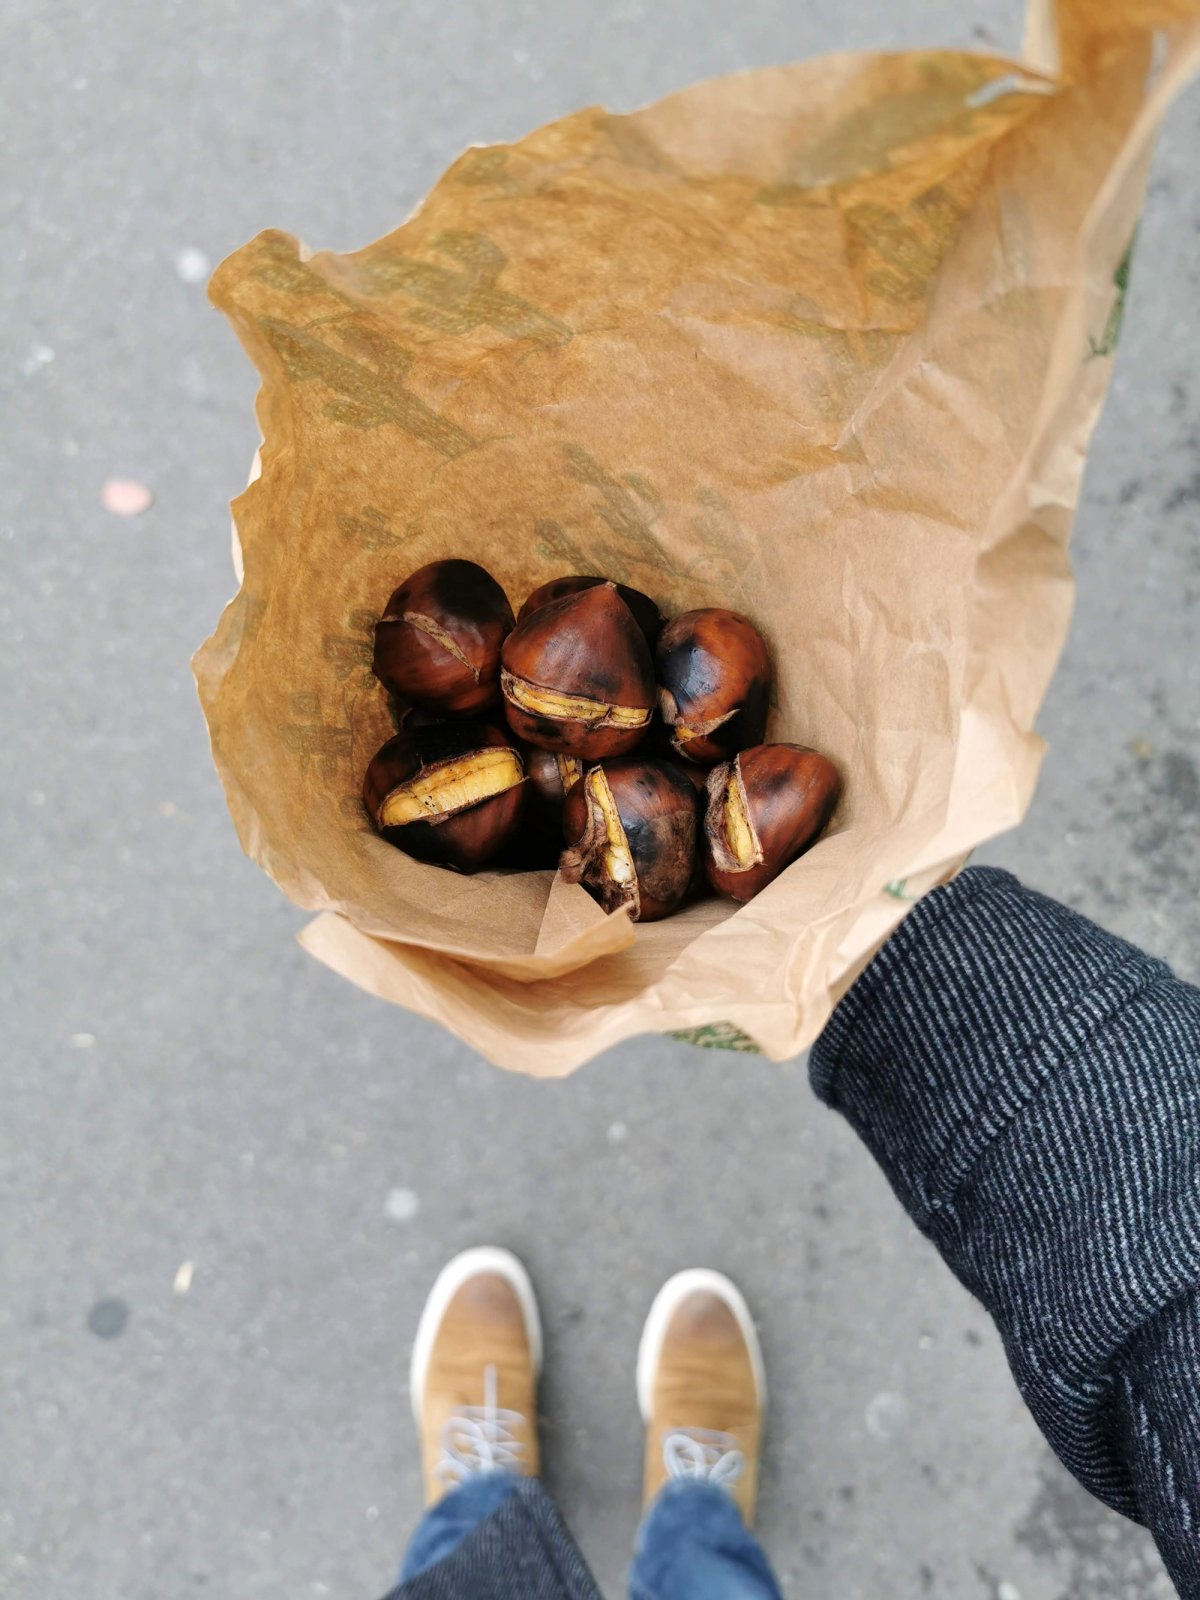 Roasted Chestnuts in Switzerland - Heissi Marroni - Albisriederplatz Zurich